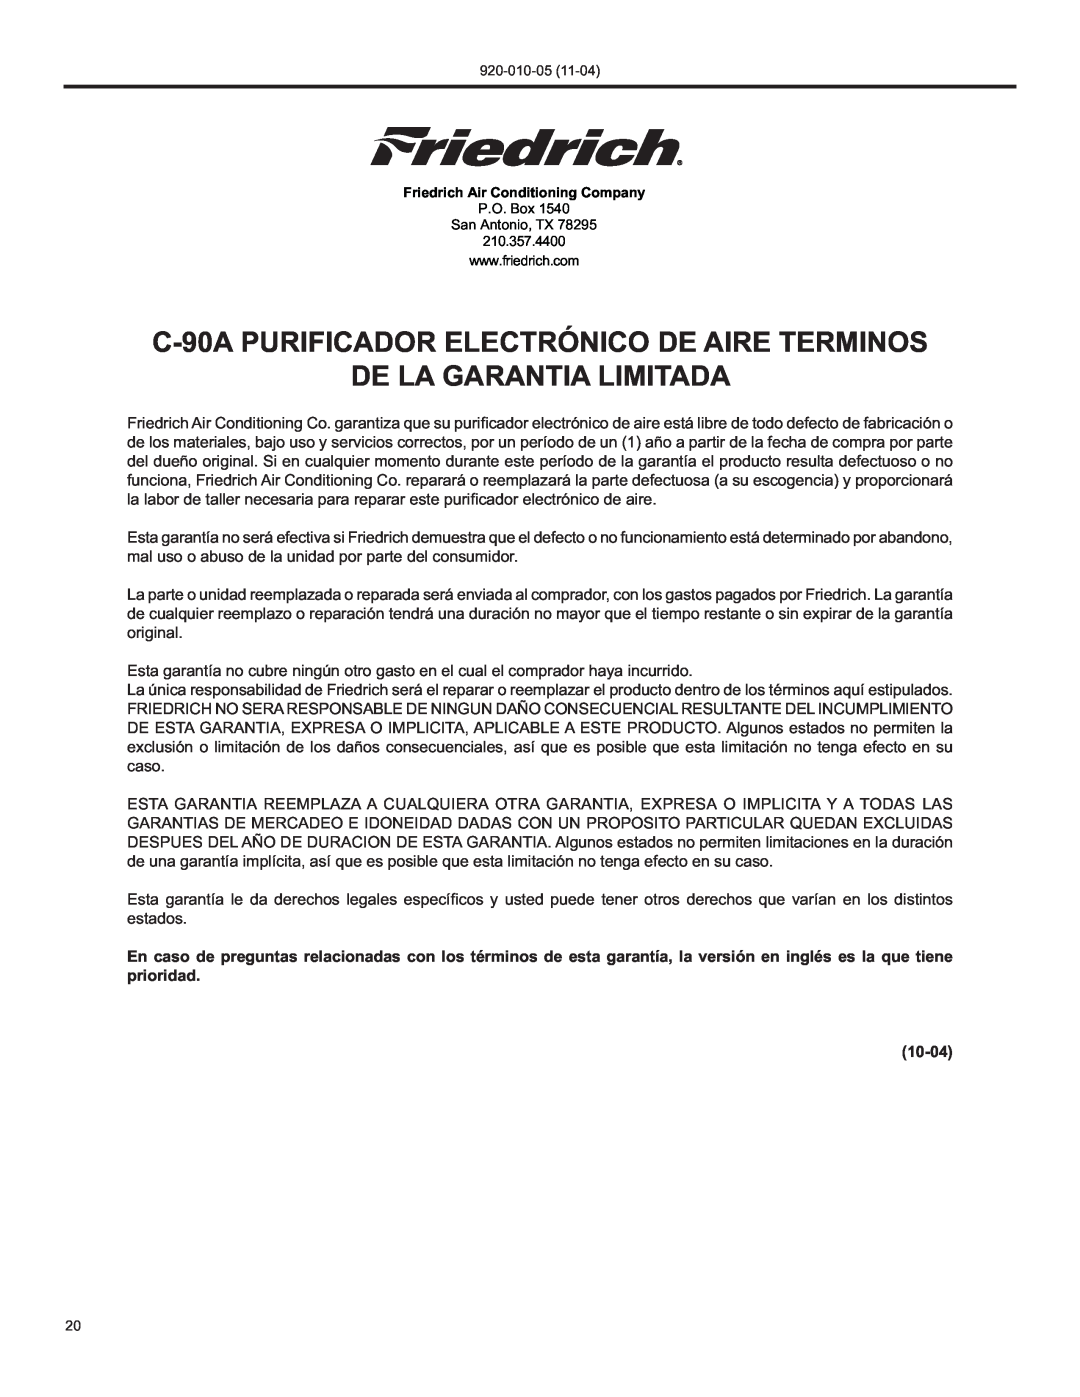 Nilfisk-ALTO manual C-90APURIFICADOR ELECTRÓNICO DE AIRE TERMINOS, De La Garantia Limitada, 10-04 